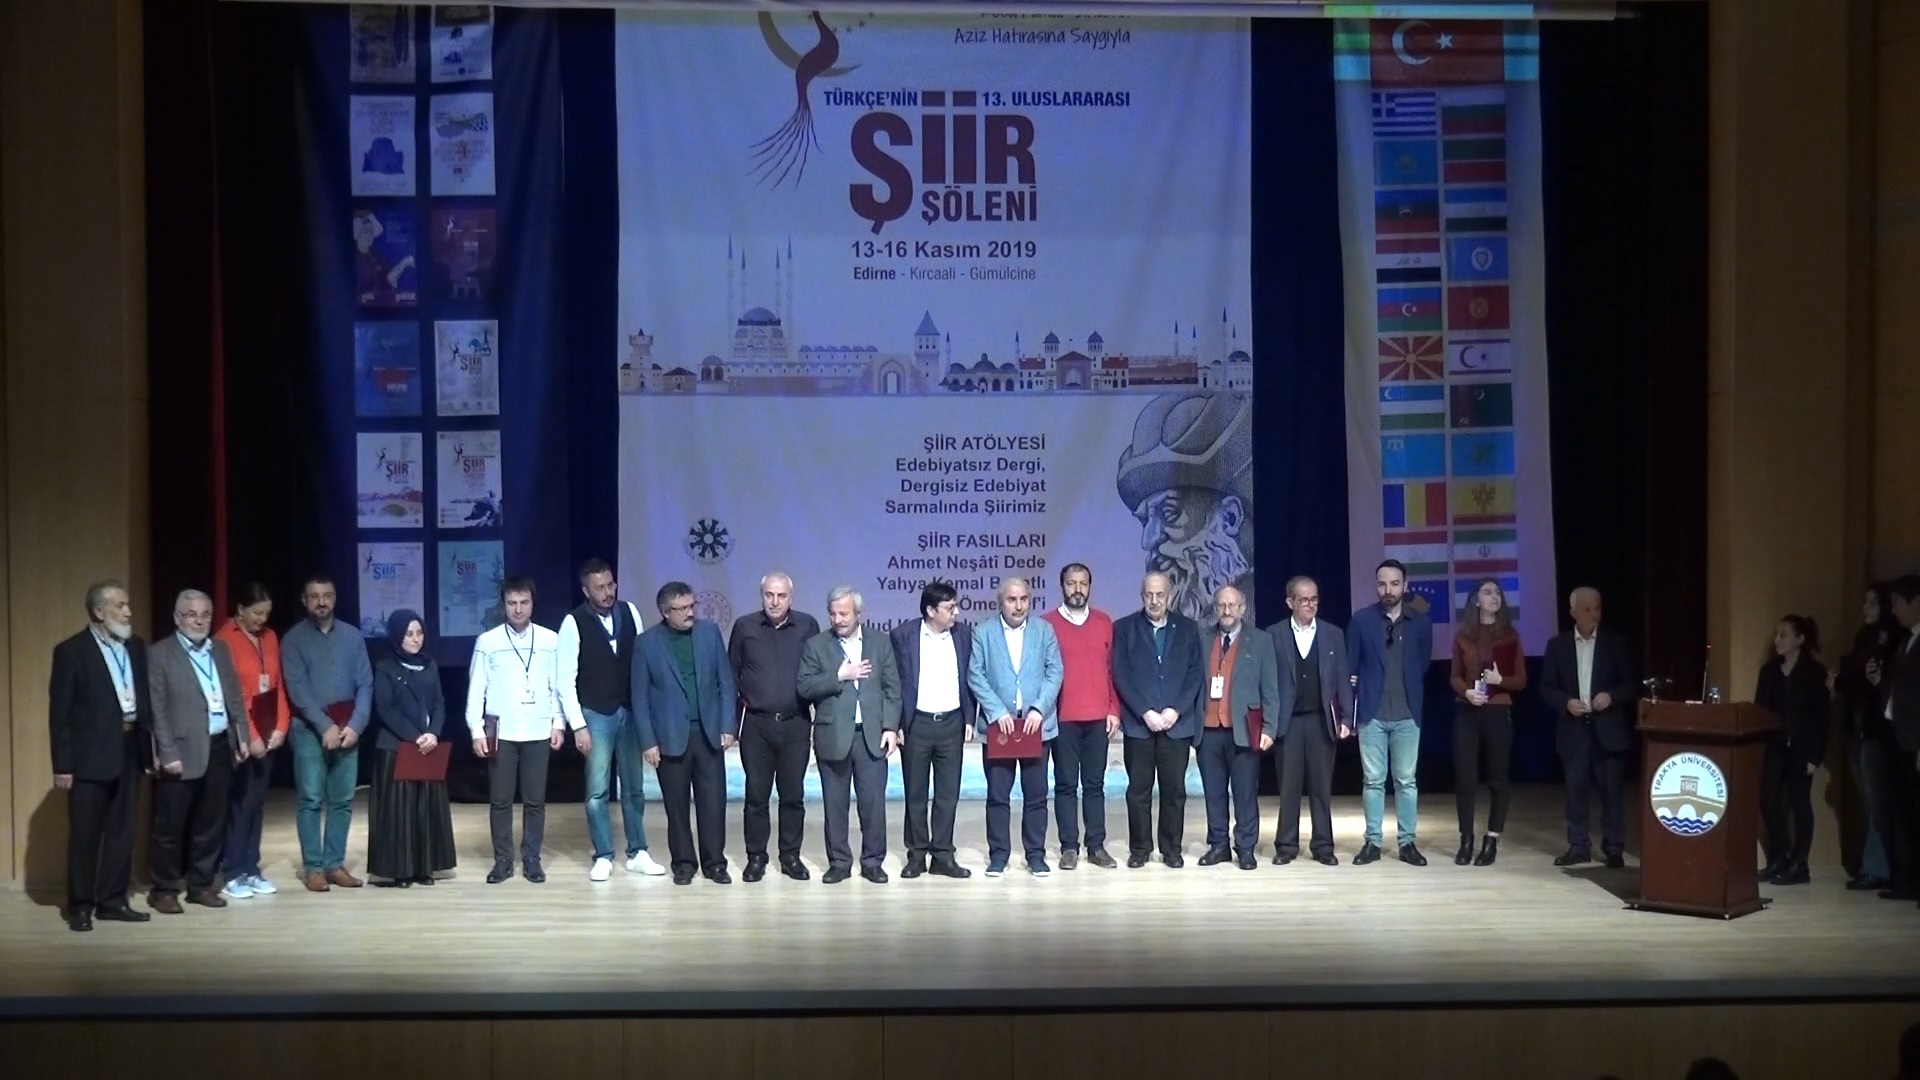 Türkçenin 13. Uluslararası Şiir Şöleni Belgeseli